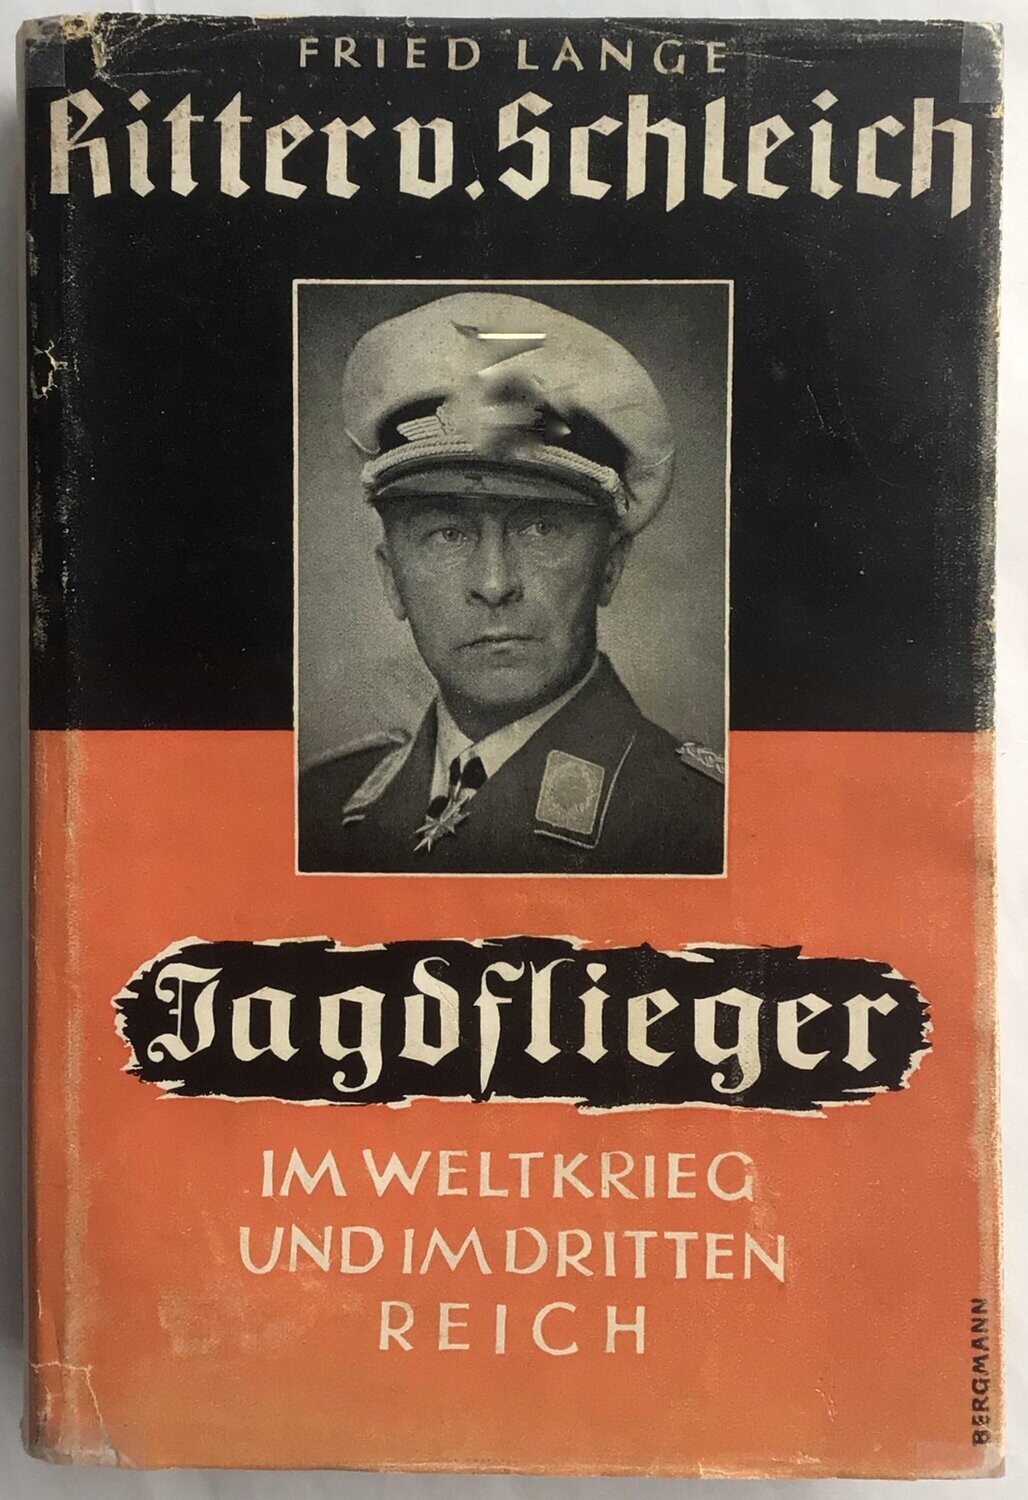 Lange: Ritter v. Schleich. Jagdflieger im Weltkrieg und im Dritten Reich. Ganzleinenausgabe aus dem Jahr 1939 mit Original-Schutzumschlag.